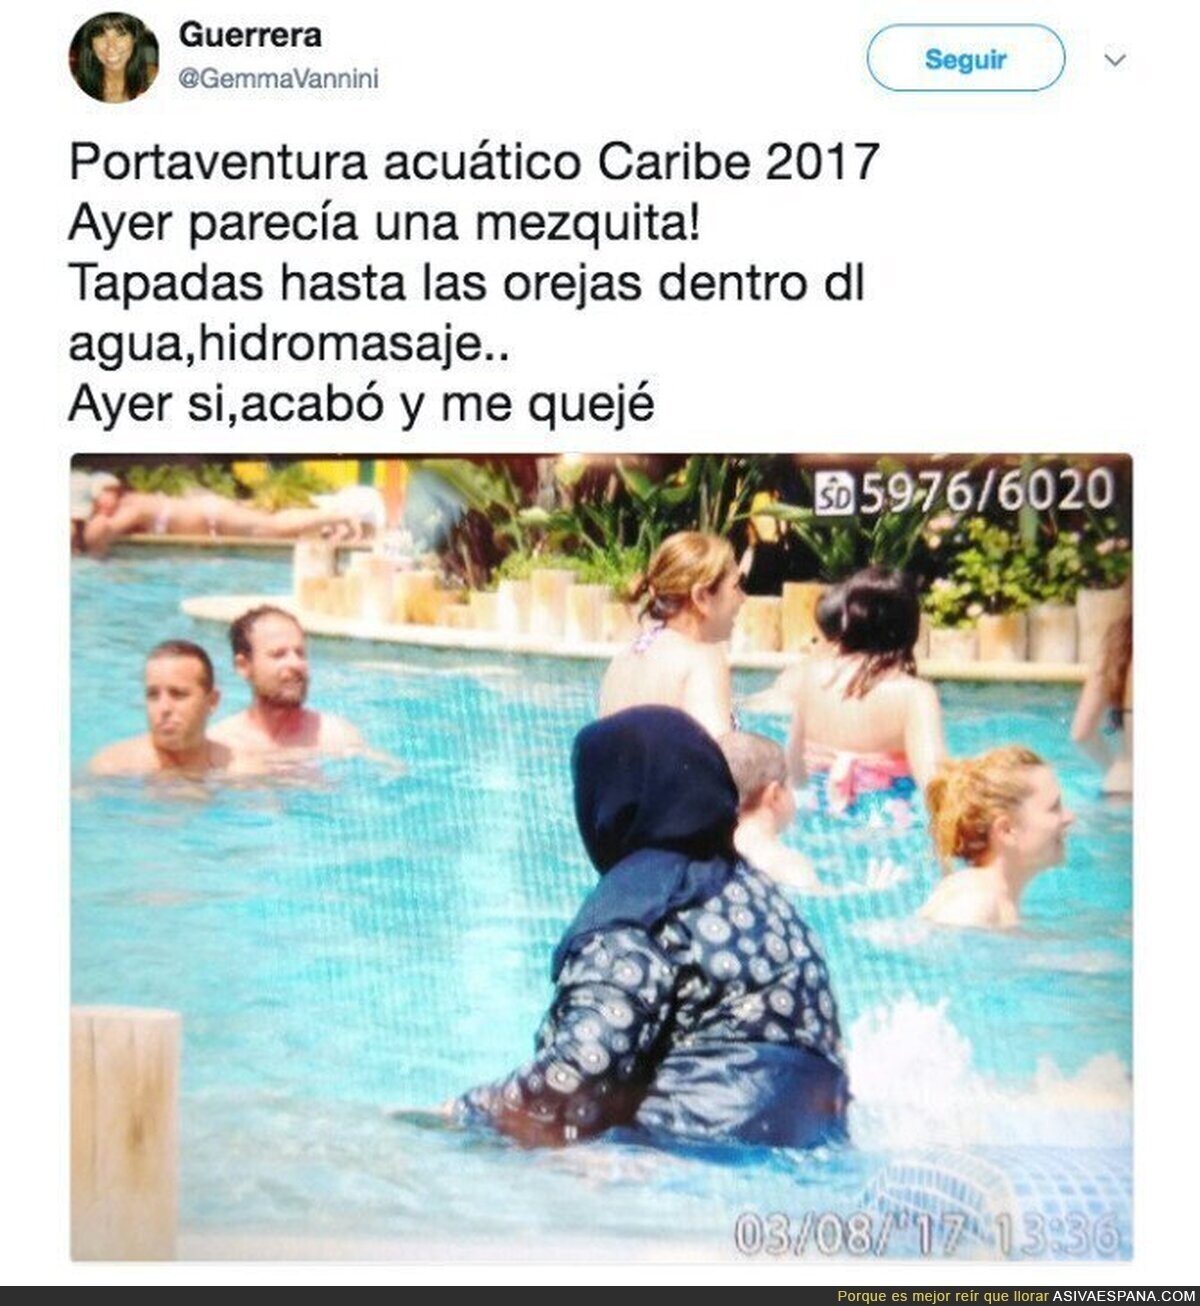 Denuncian esta imagen de una musulmana bañándose totalmente tapada en una piscina